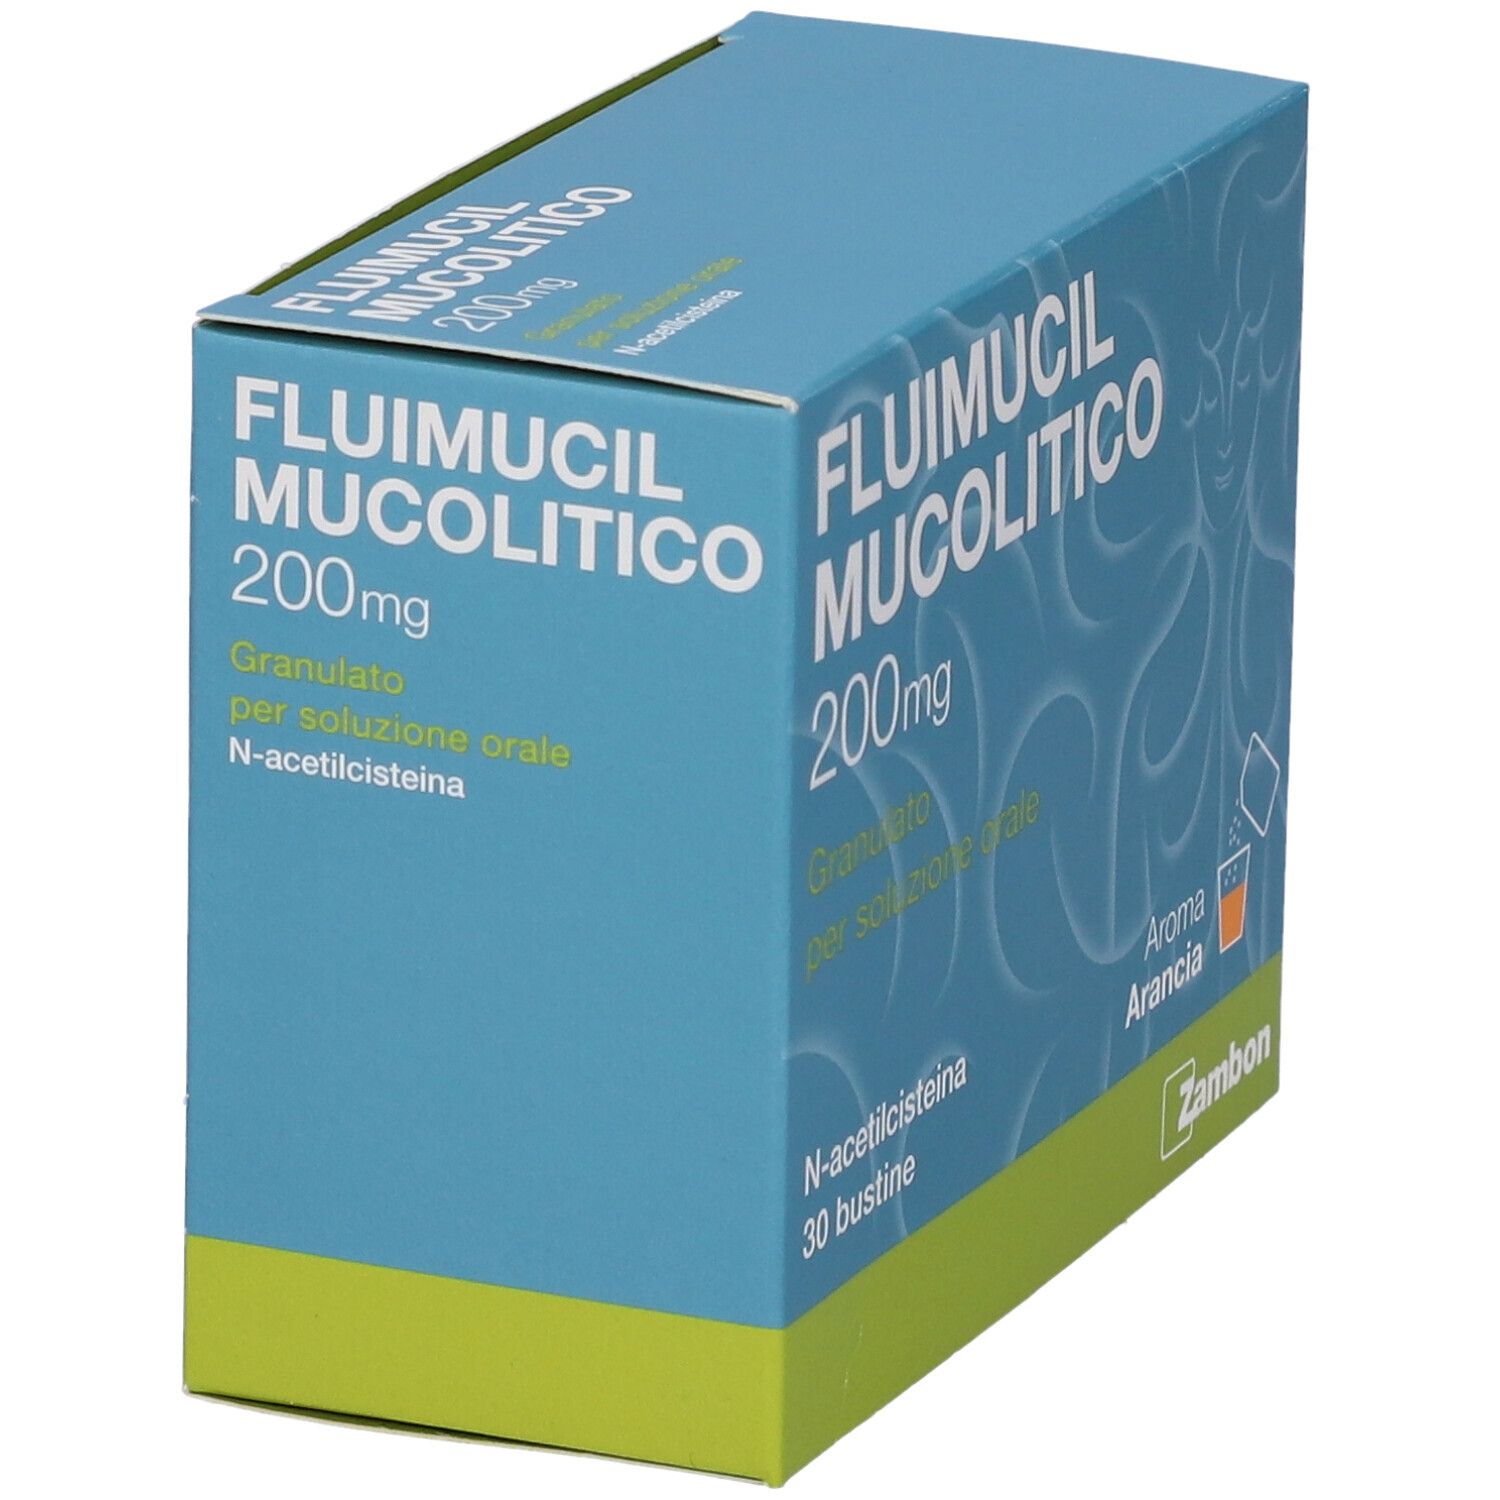 Fluimucil Mucolitico 200 mg Granulato per soluzione orale